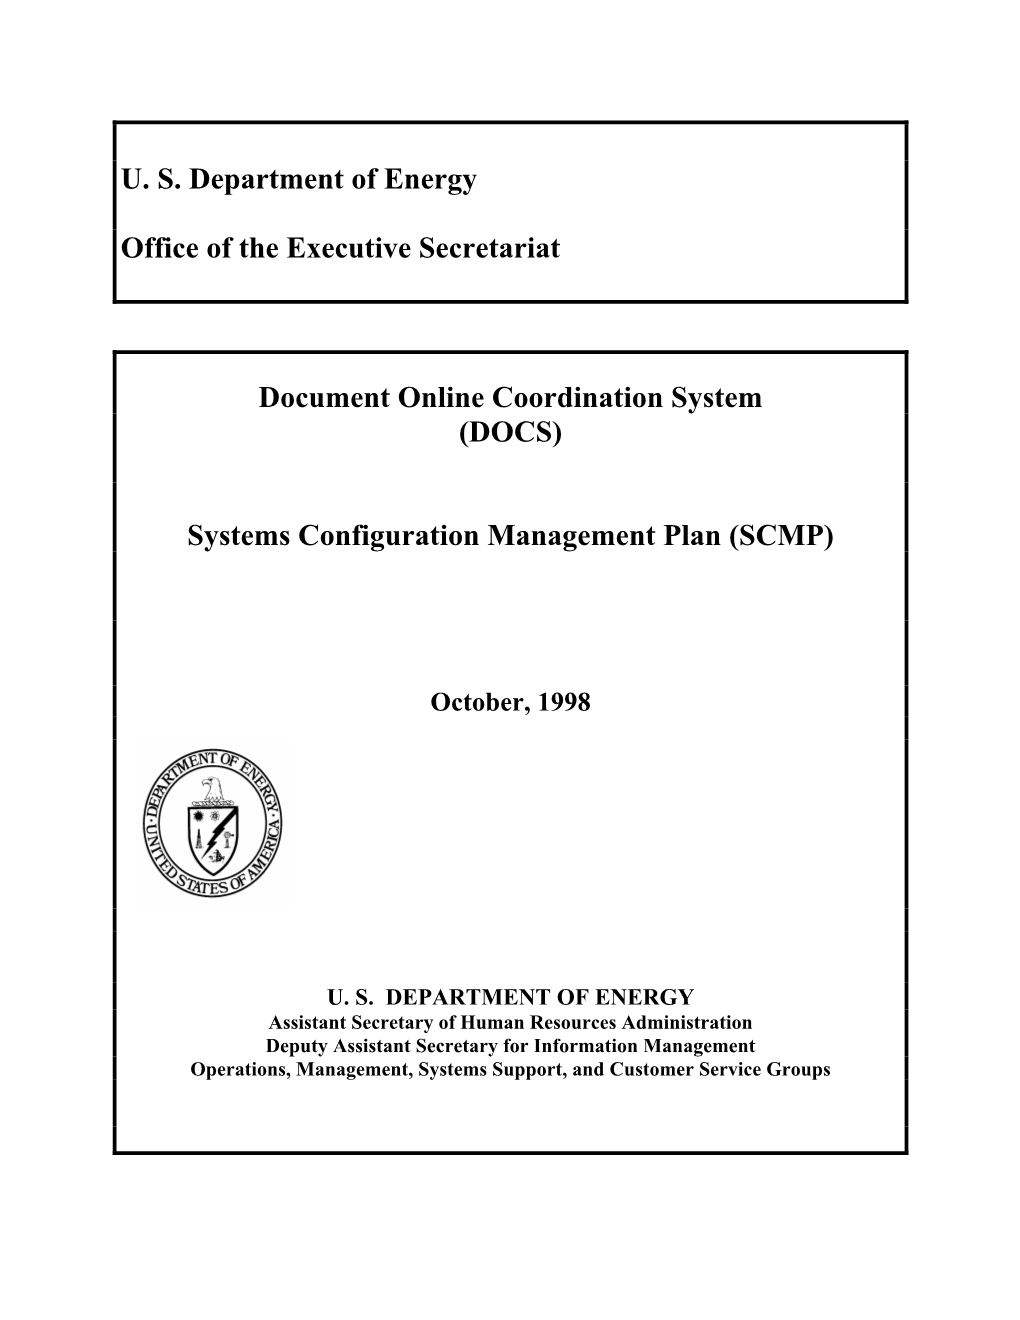 DOCS) Systems Configuration Management Plan (SCMP